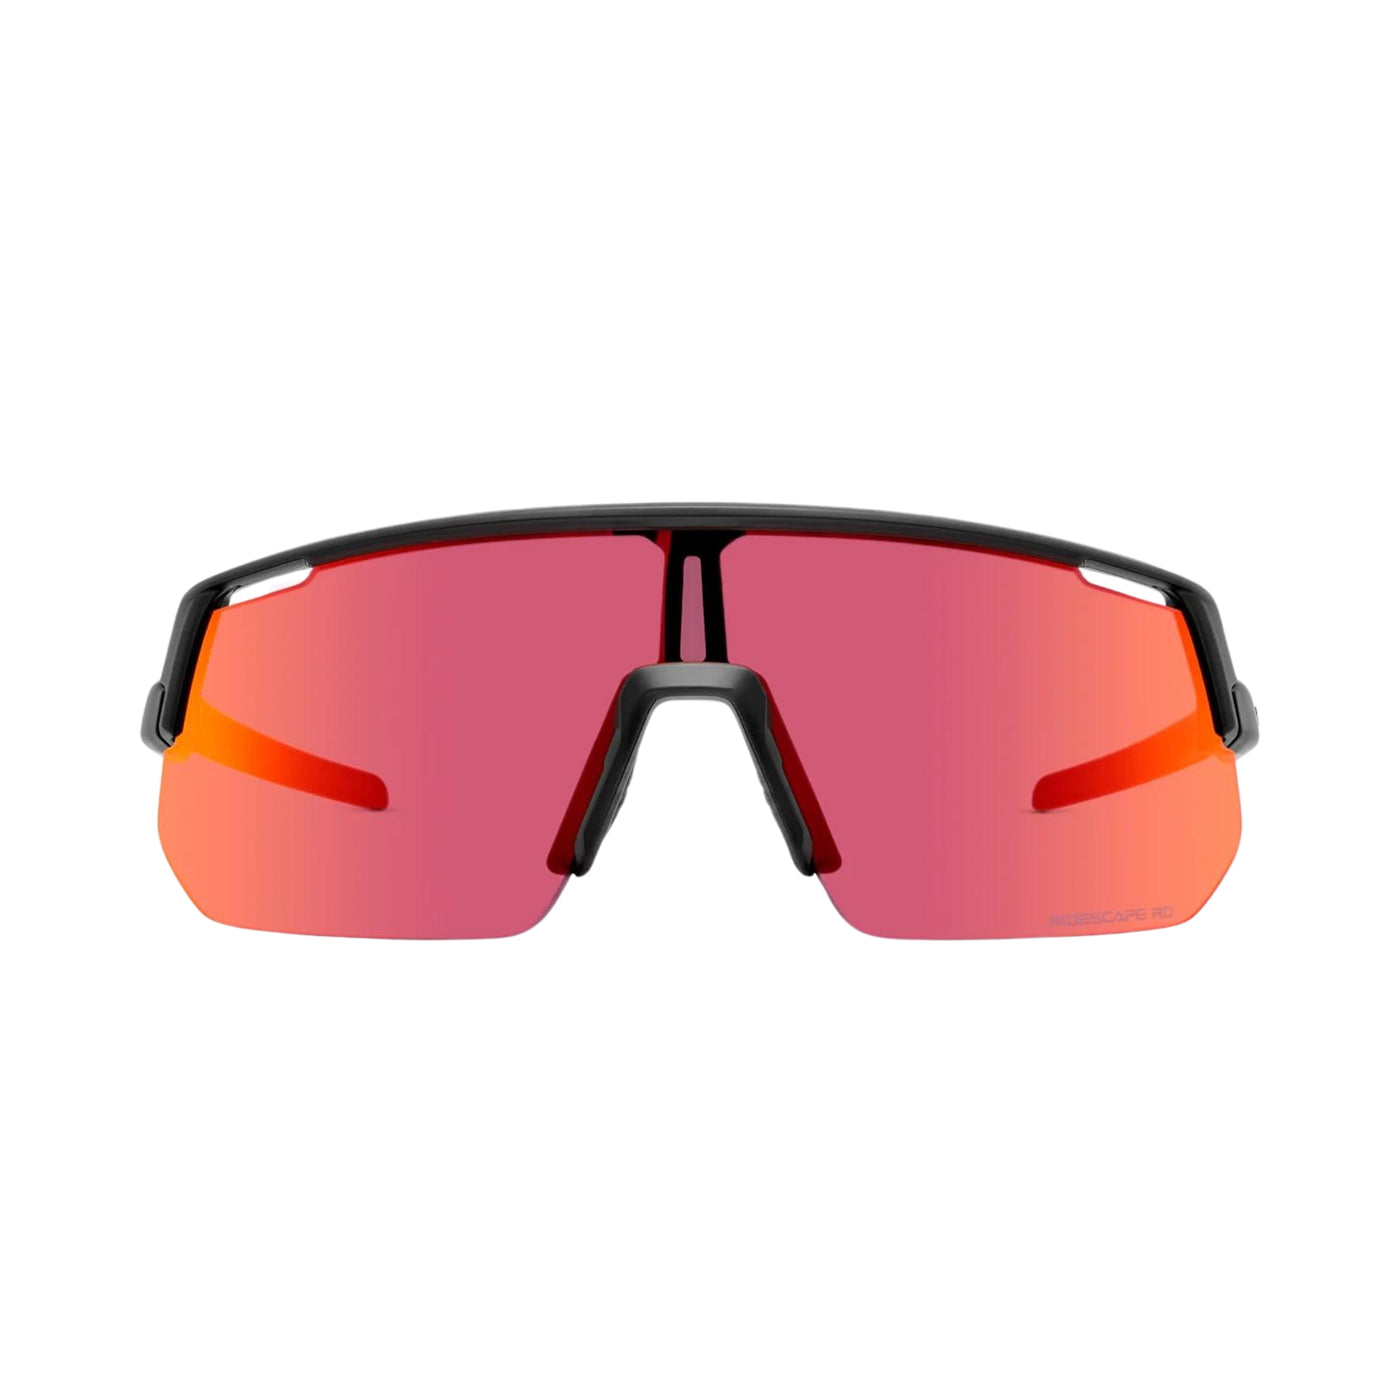 Technium L Sunglasses